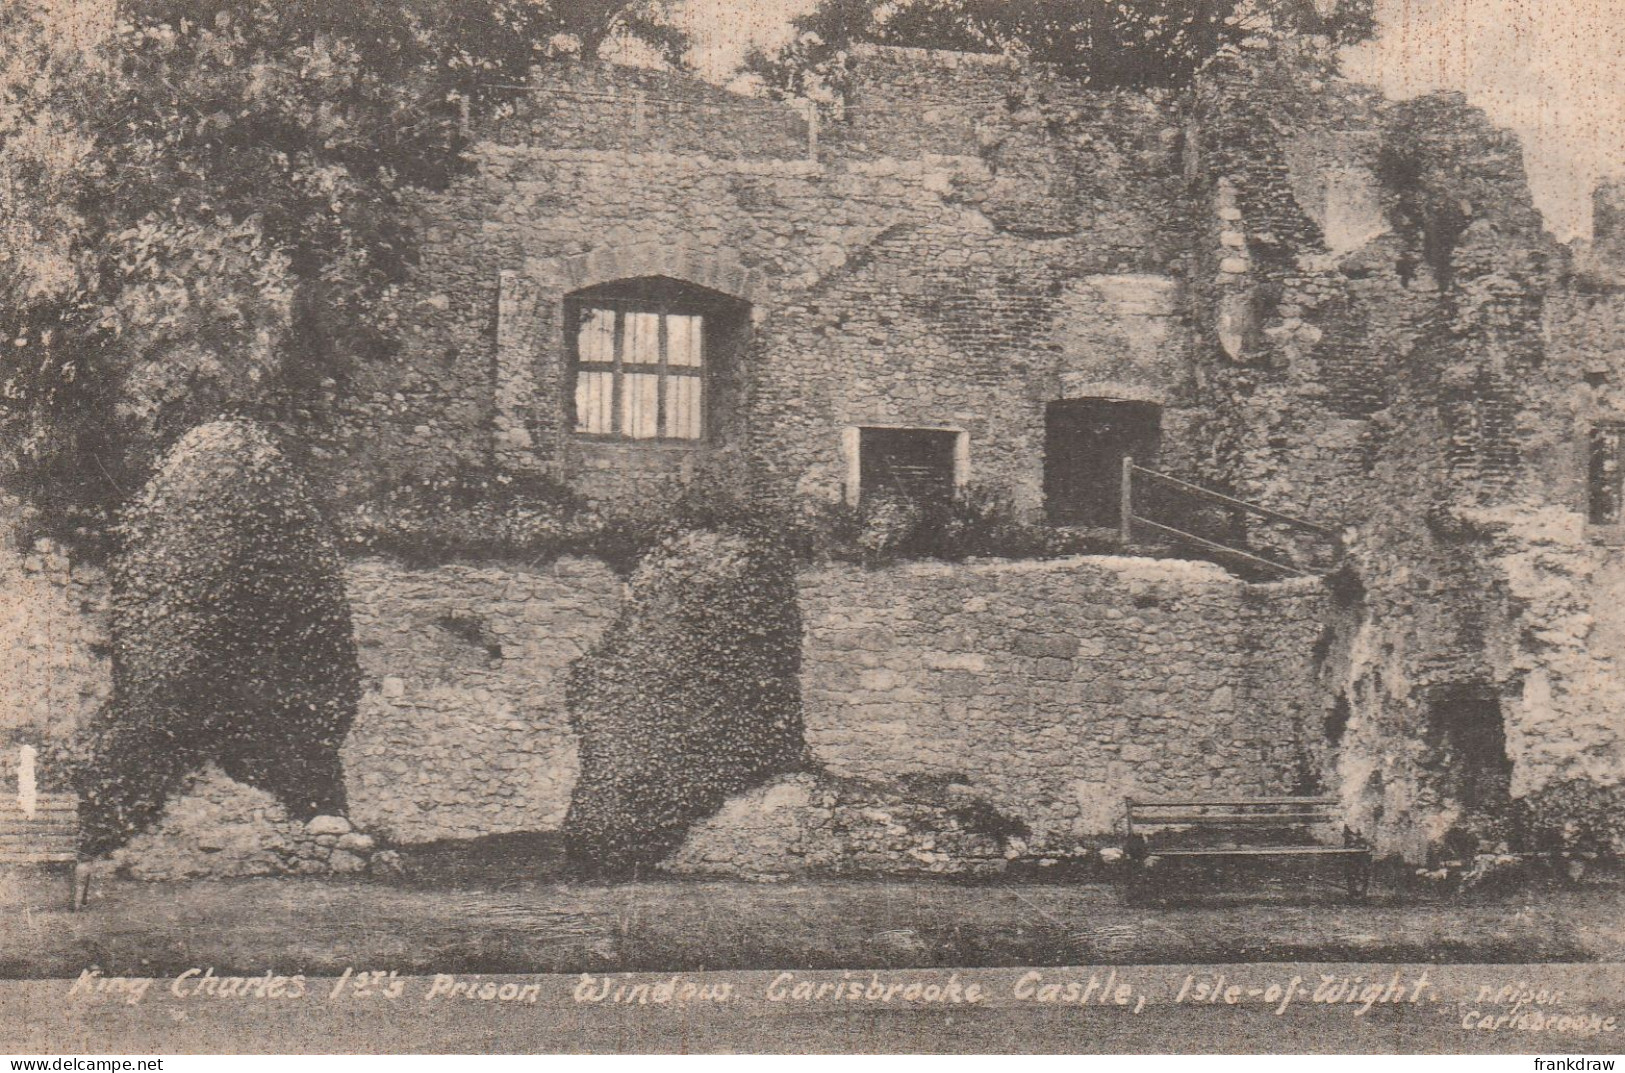 Postcard - King Charles 1st - Prison Window - Garisbraoke Castle, I.O.W - Very Good - Unclassified